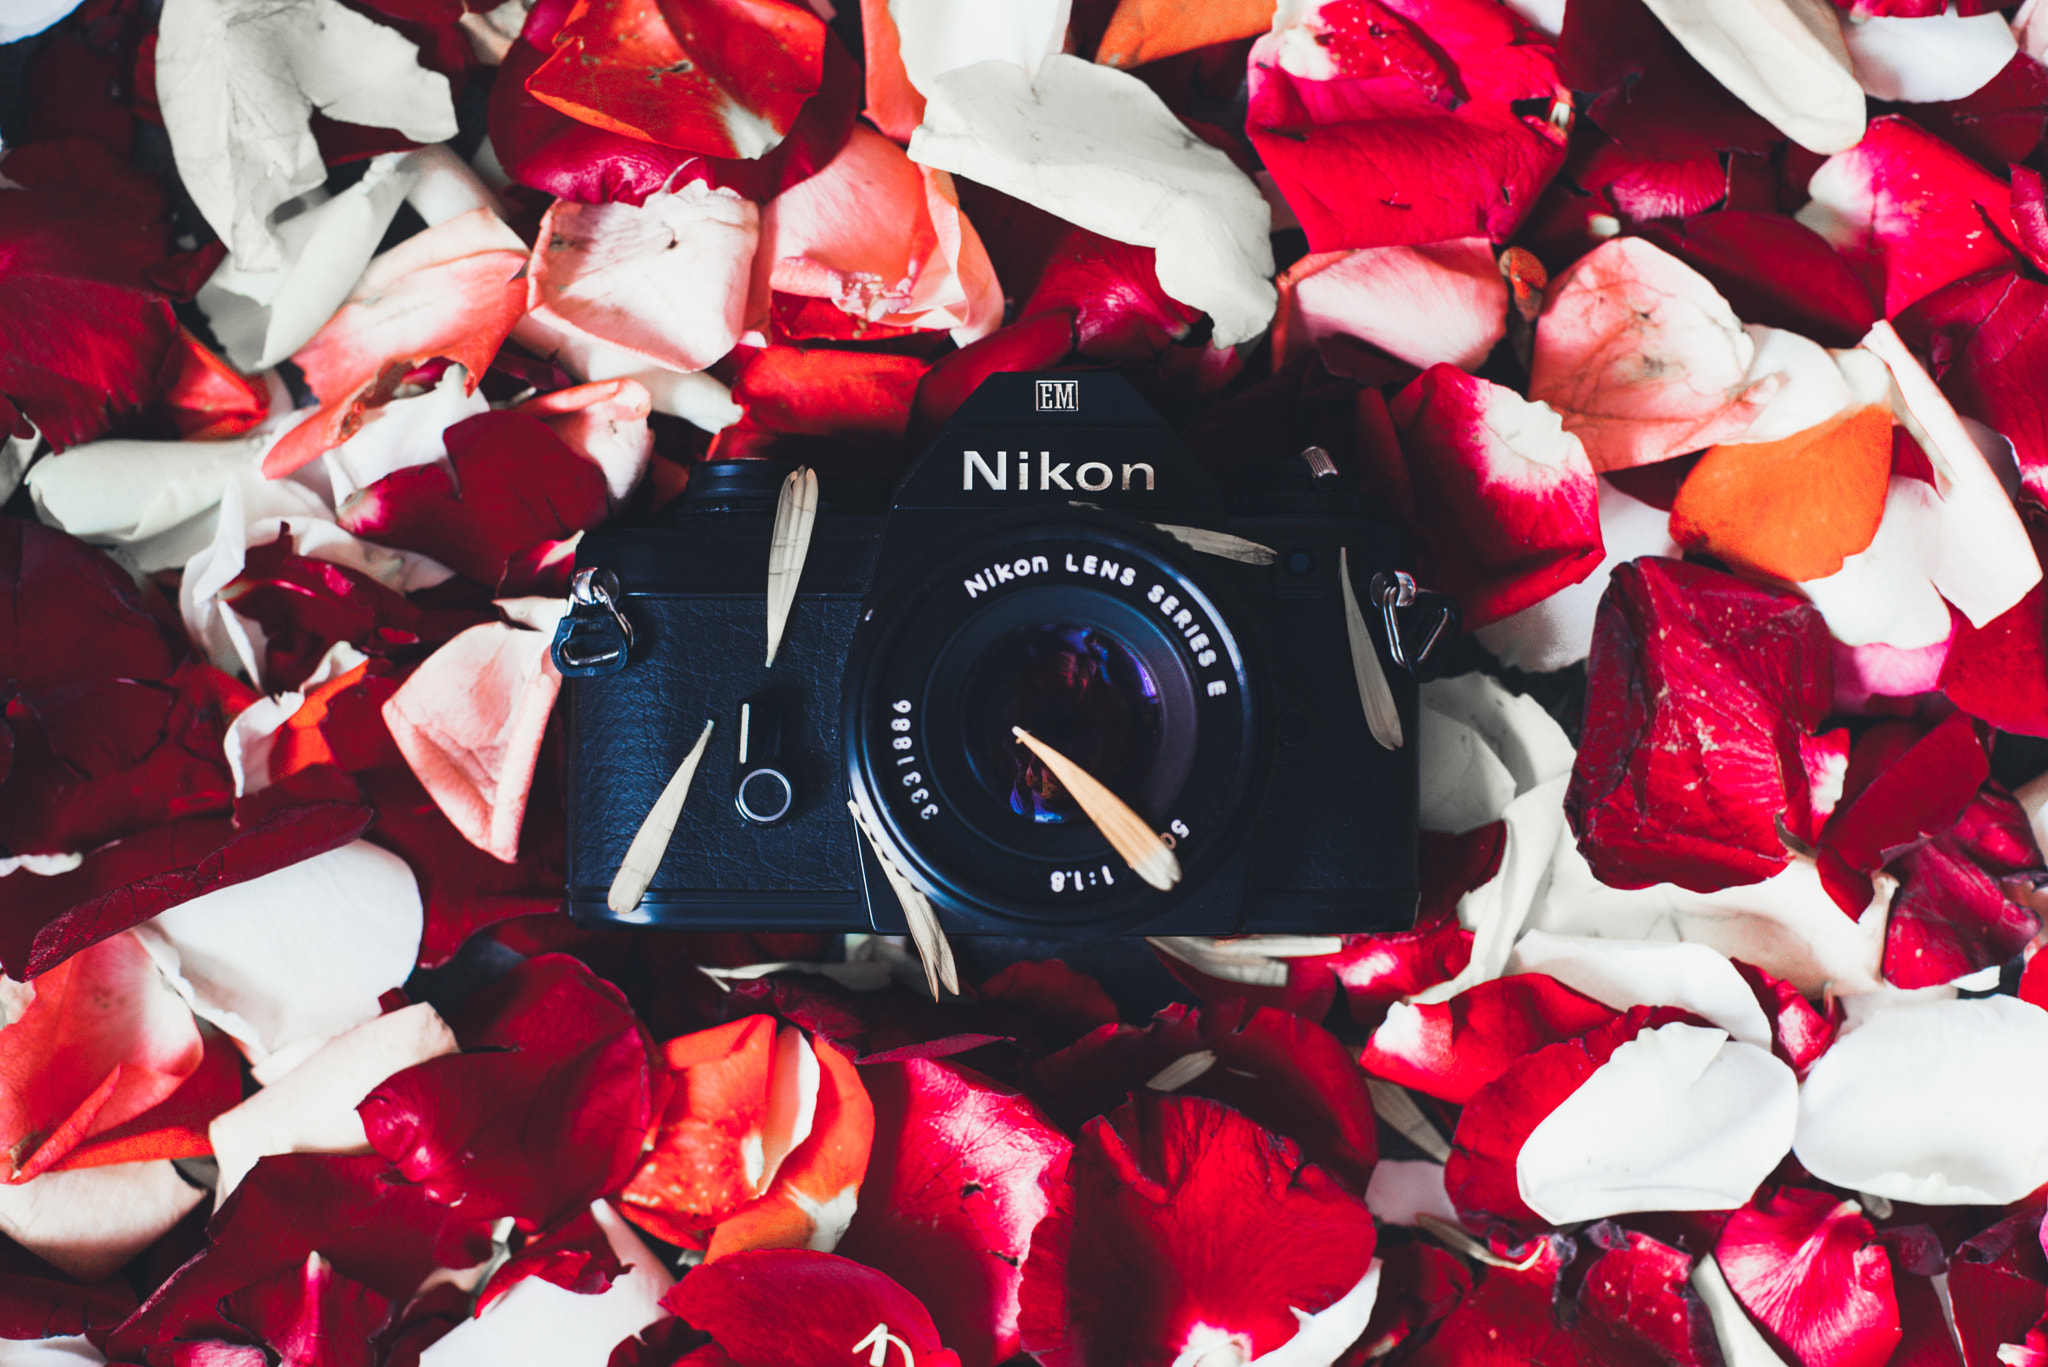 Nikon D610 + Nikon AF Nikkor 50mm F1.4D sample photo. Some of my nikon collection  nikon em nikkor f/1.8 ai-s 50mm photography